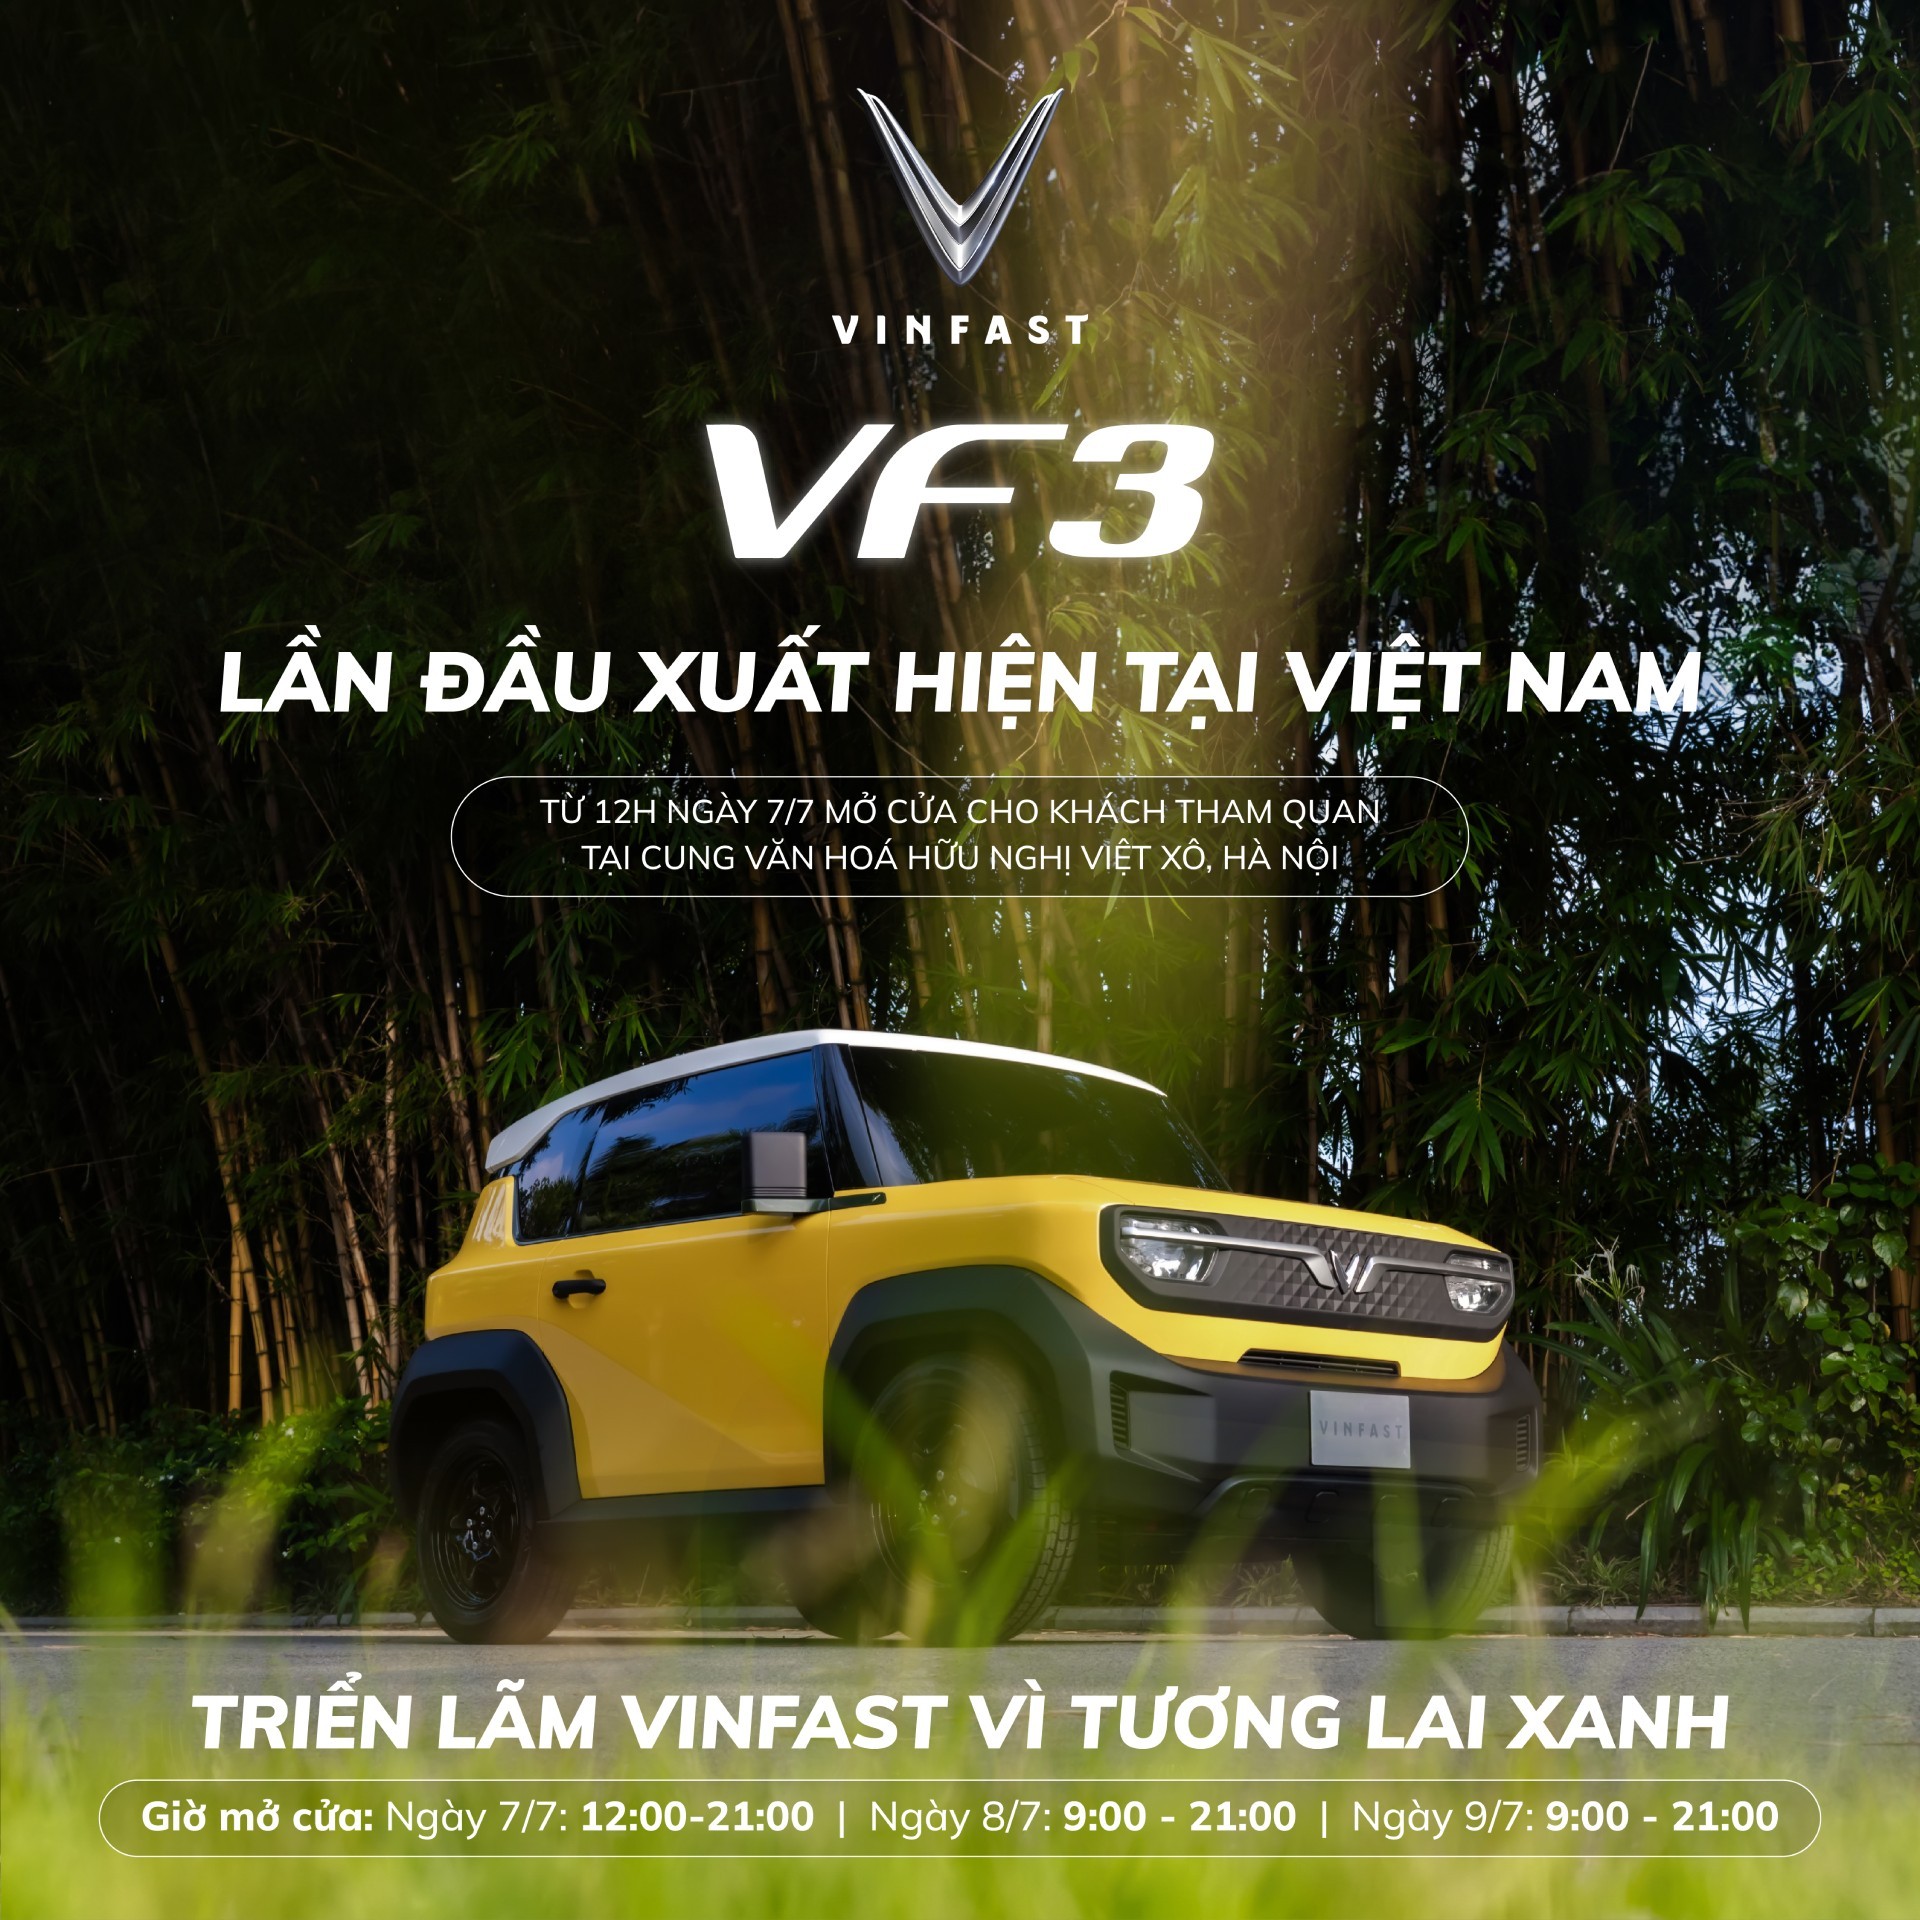 Triển lãm ‘VinFast - Vì tương lai xanh’ tại Hà Nội: Ra mắt bộ tứ xe điện VinFast mới ảnh 2